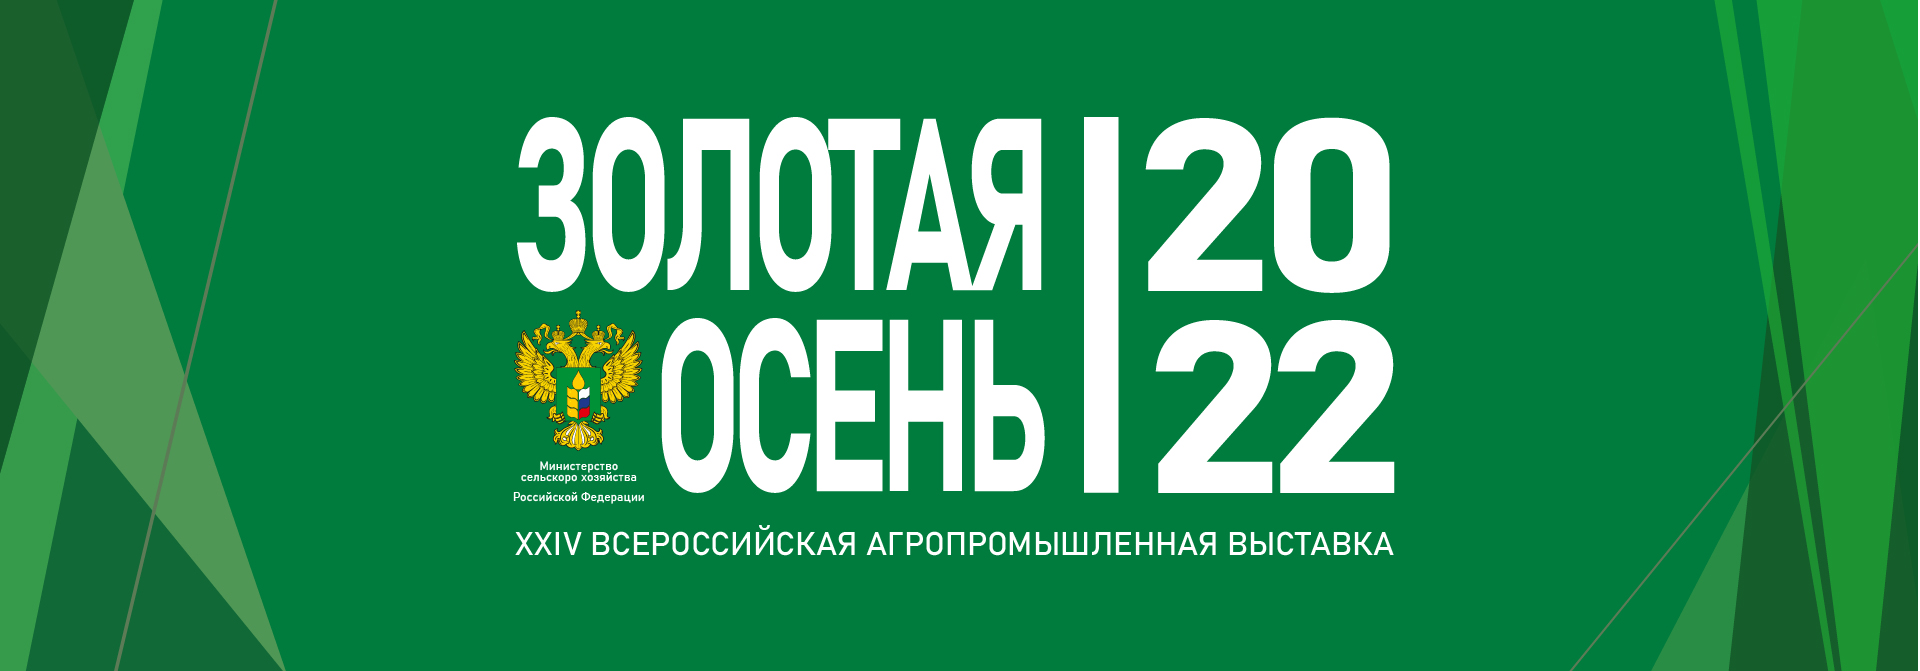 XXIV Всероссийская агропромышленная выставка «Золотая Осень-2022»